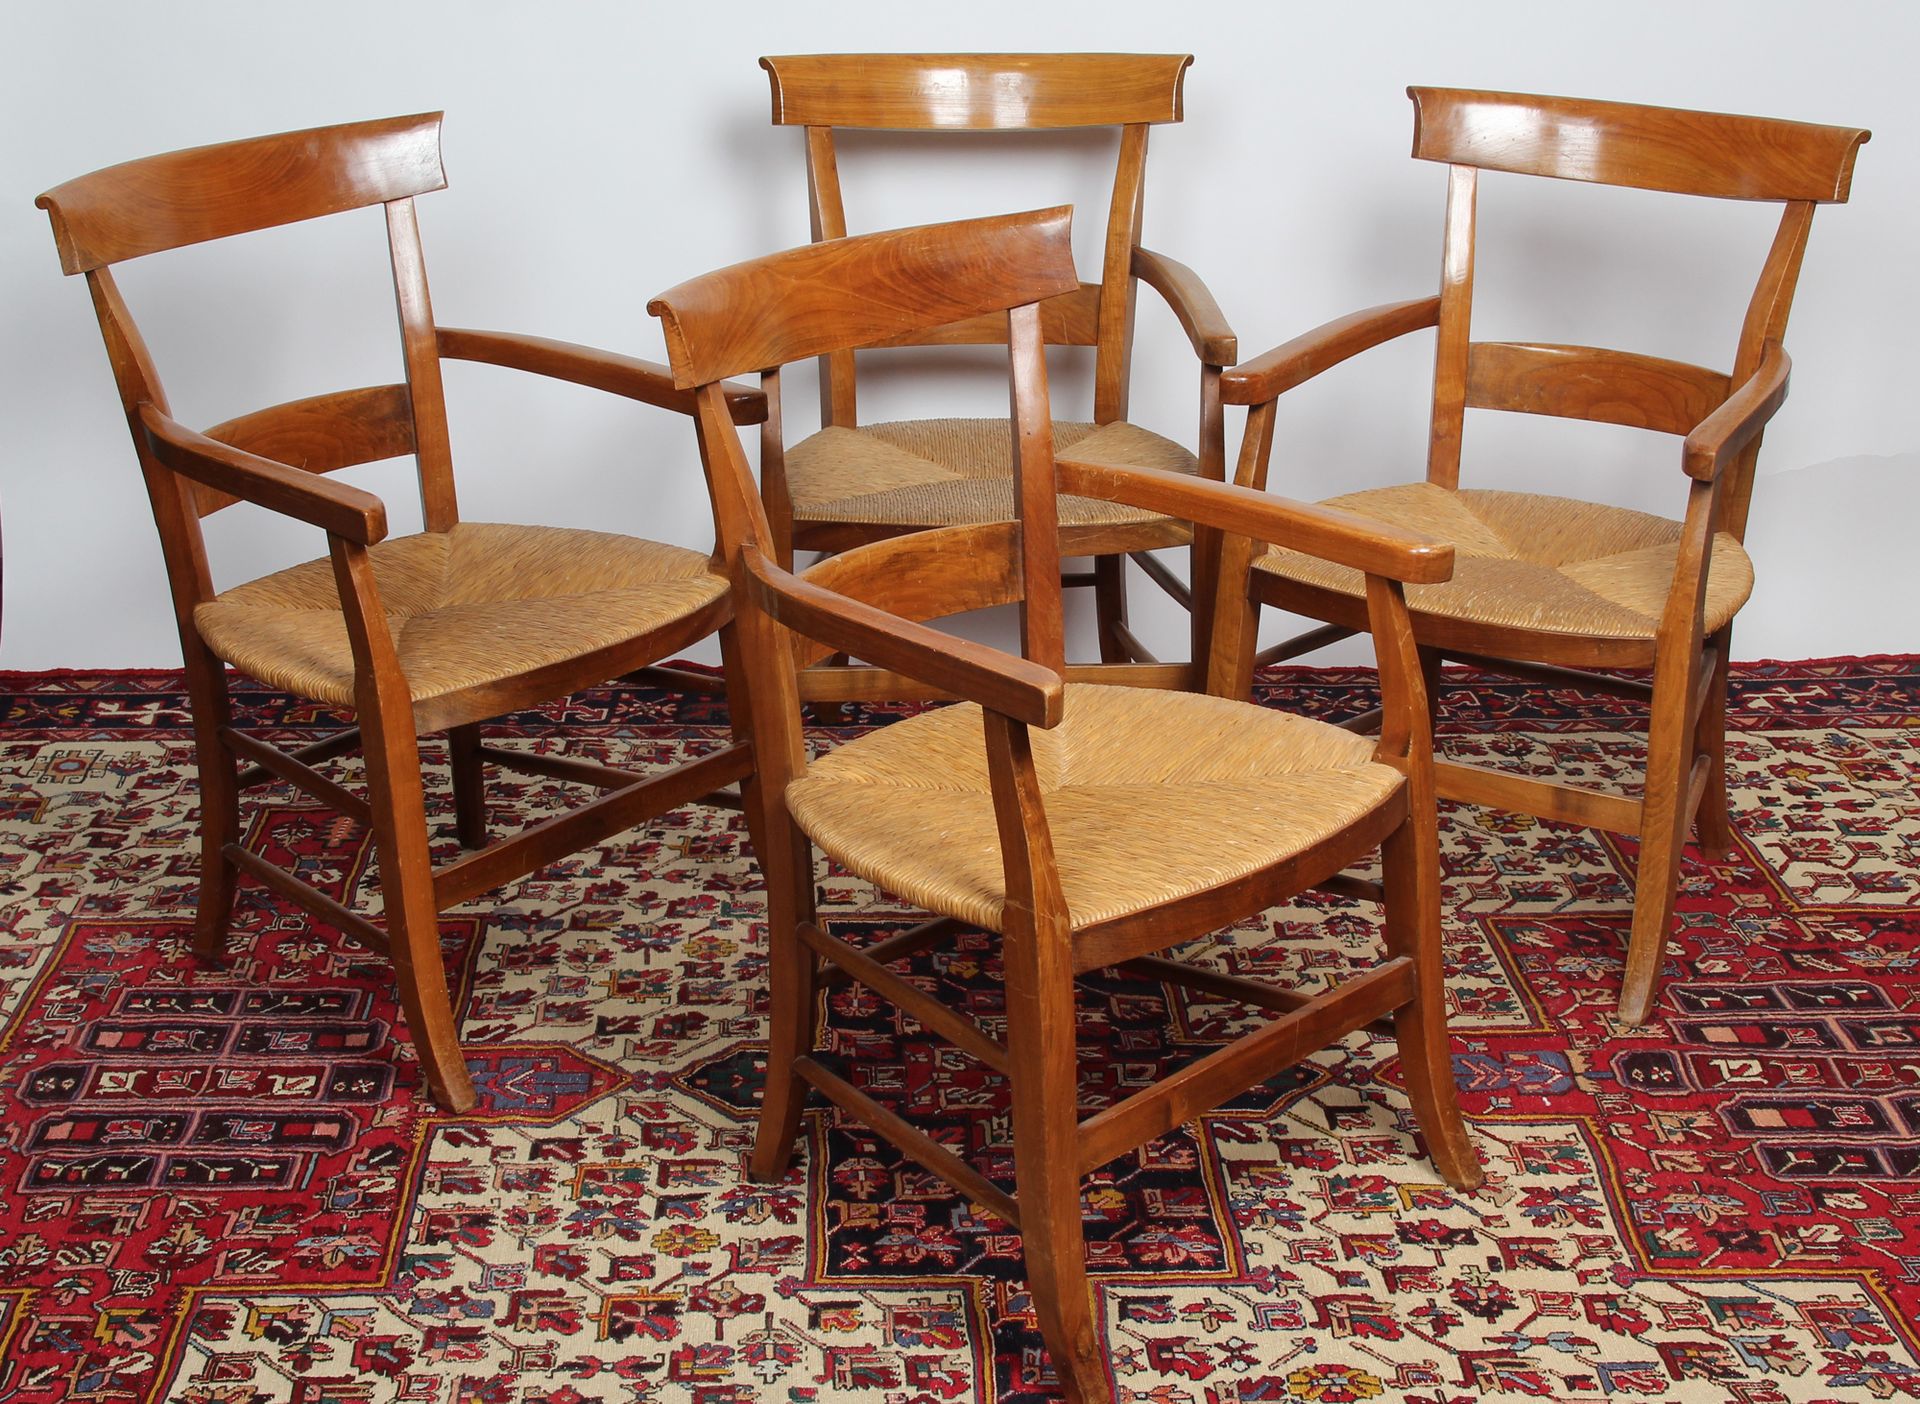 Null 四把扶手椅组合

樱桃木，带状靠背，铺有稻草的座椅，椅腿用裆杆连接。 

H.84 x W. 54 x D. 48 厘米。

(状况良好）